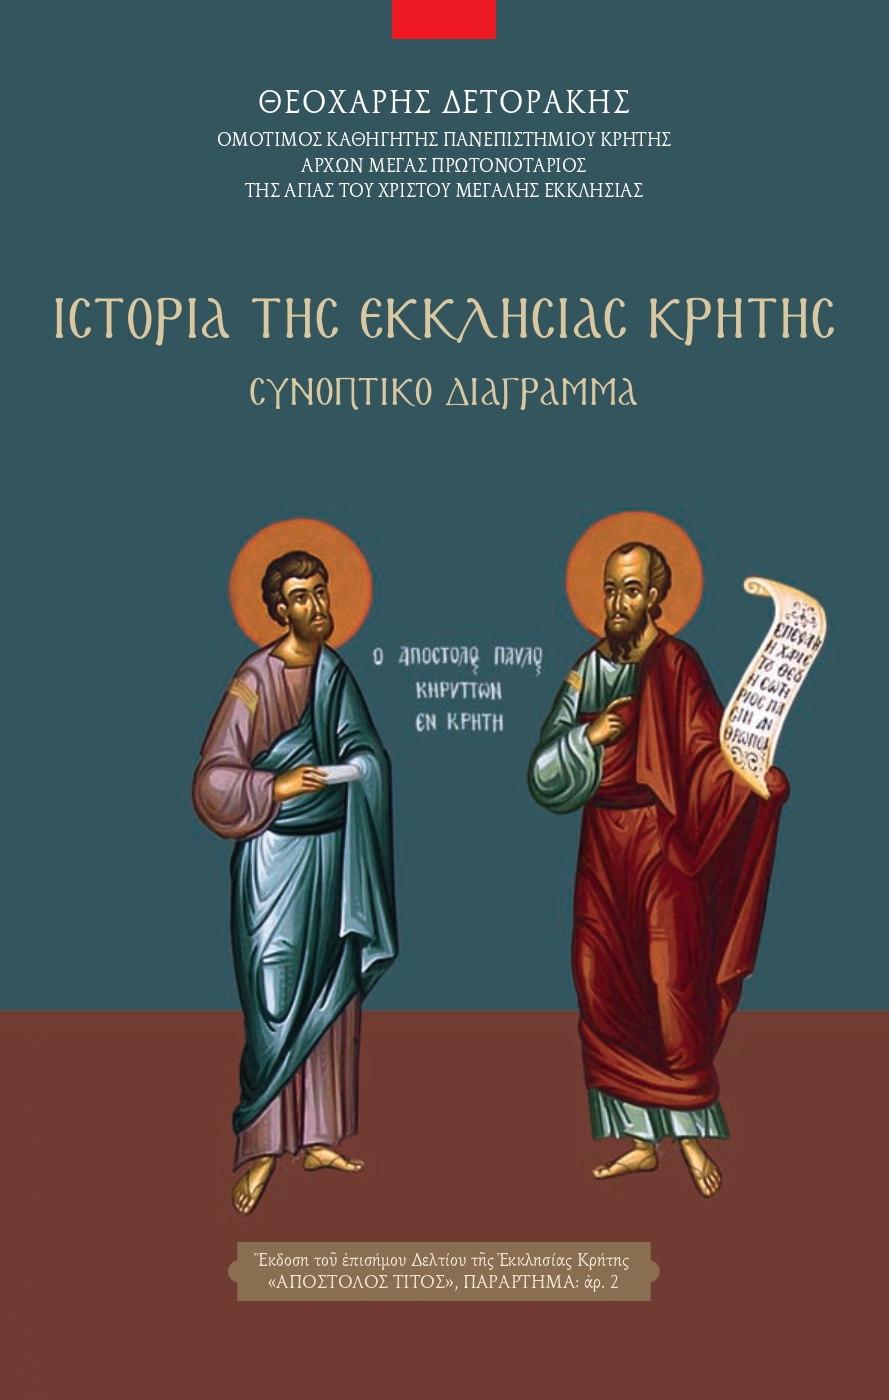 Ιστορία Εκκλησίας Κρήτης